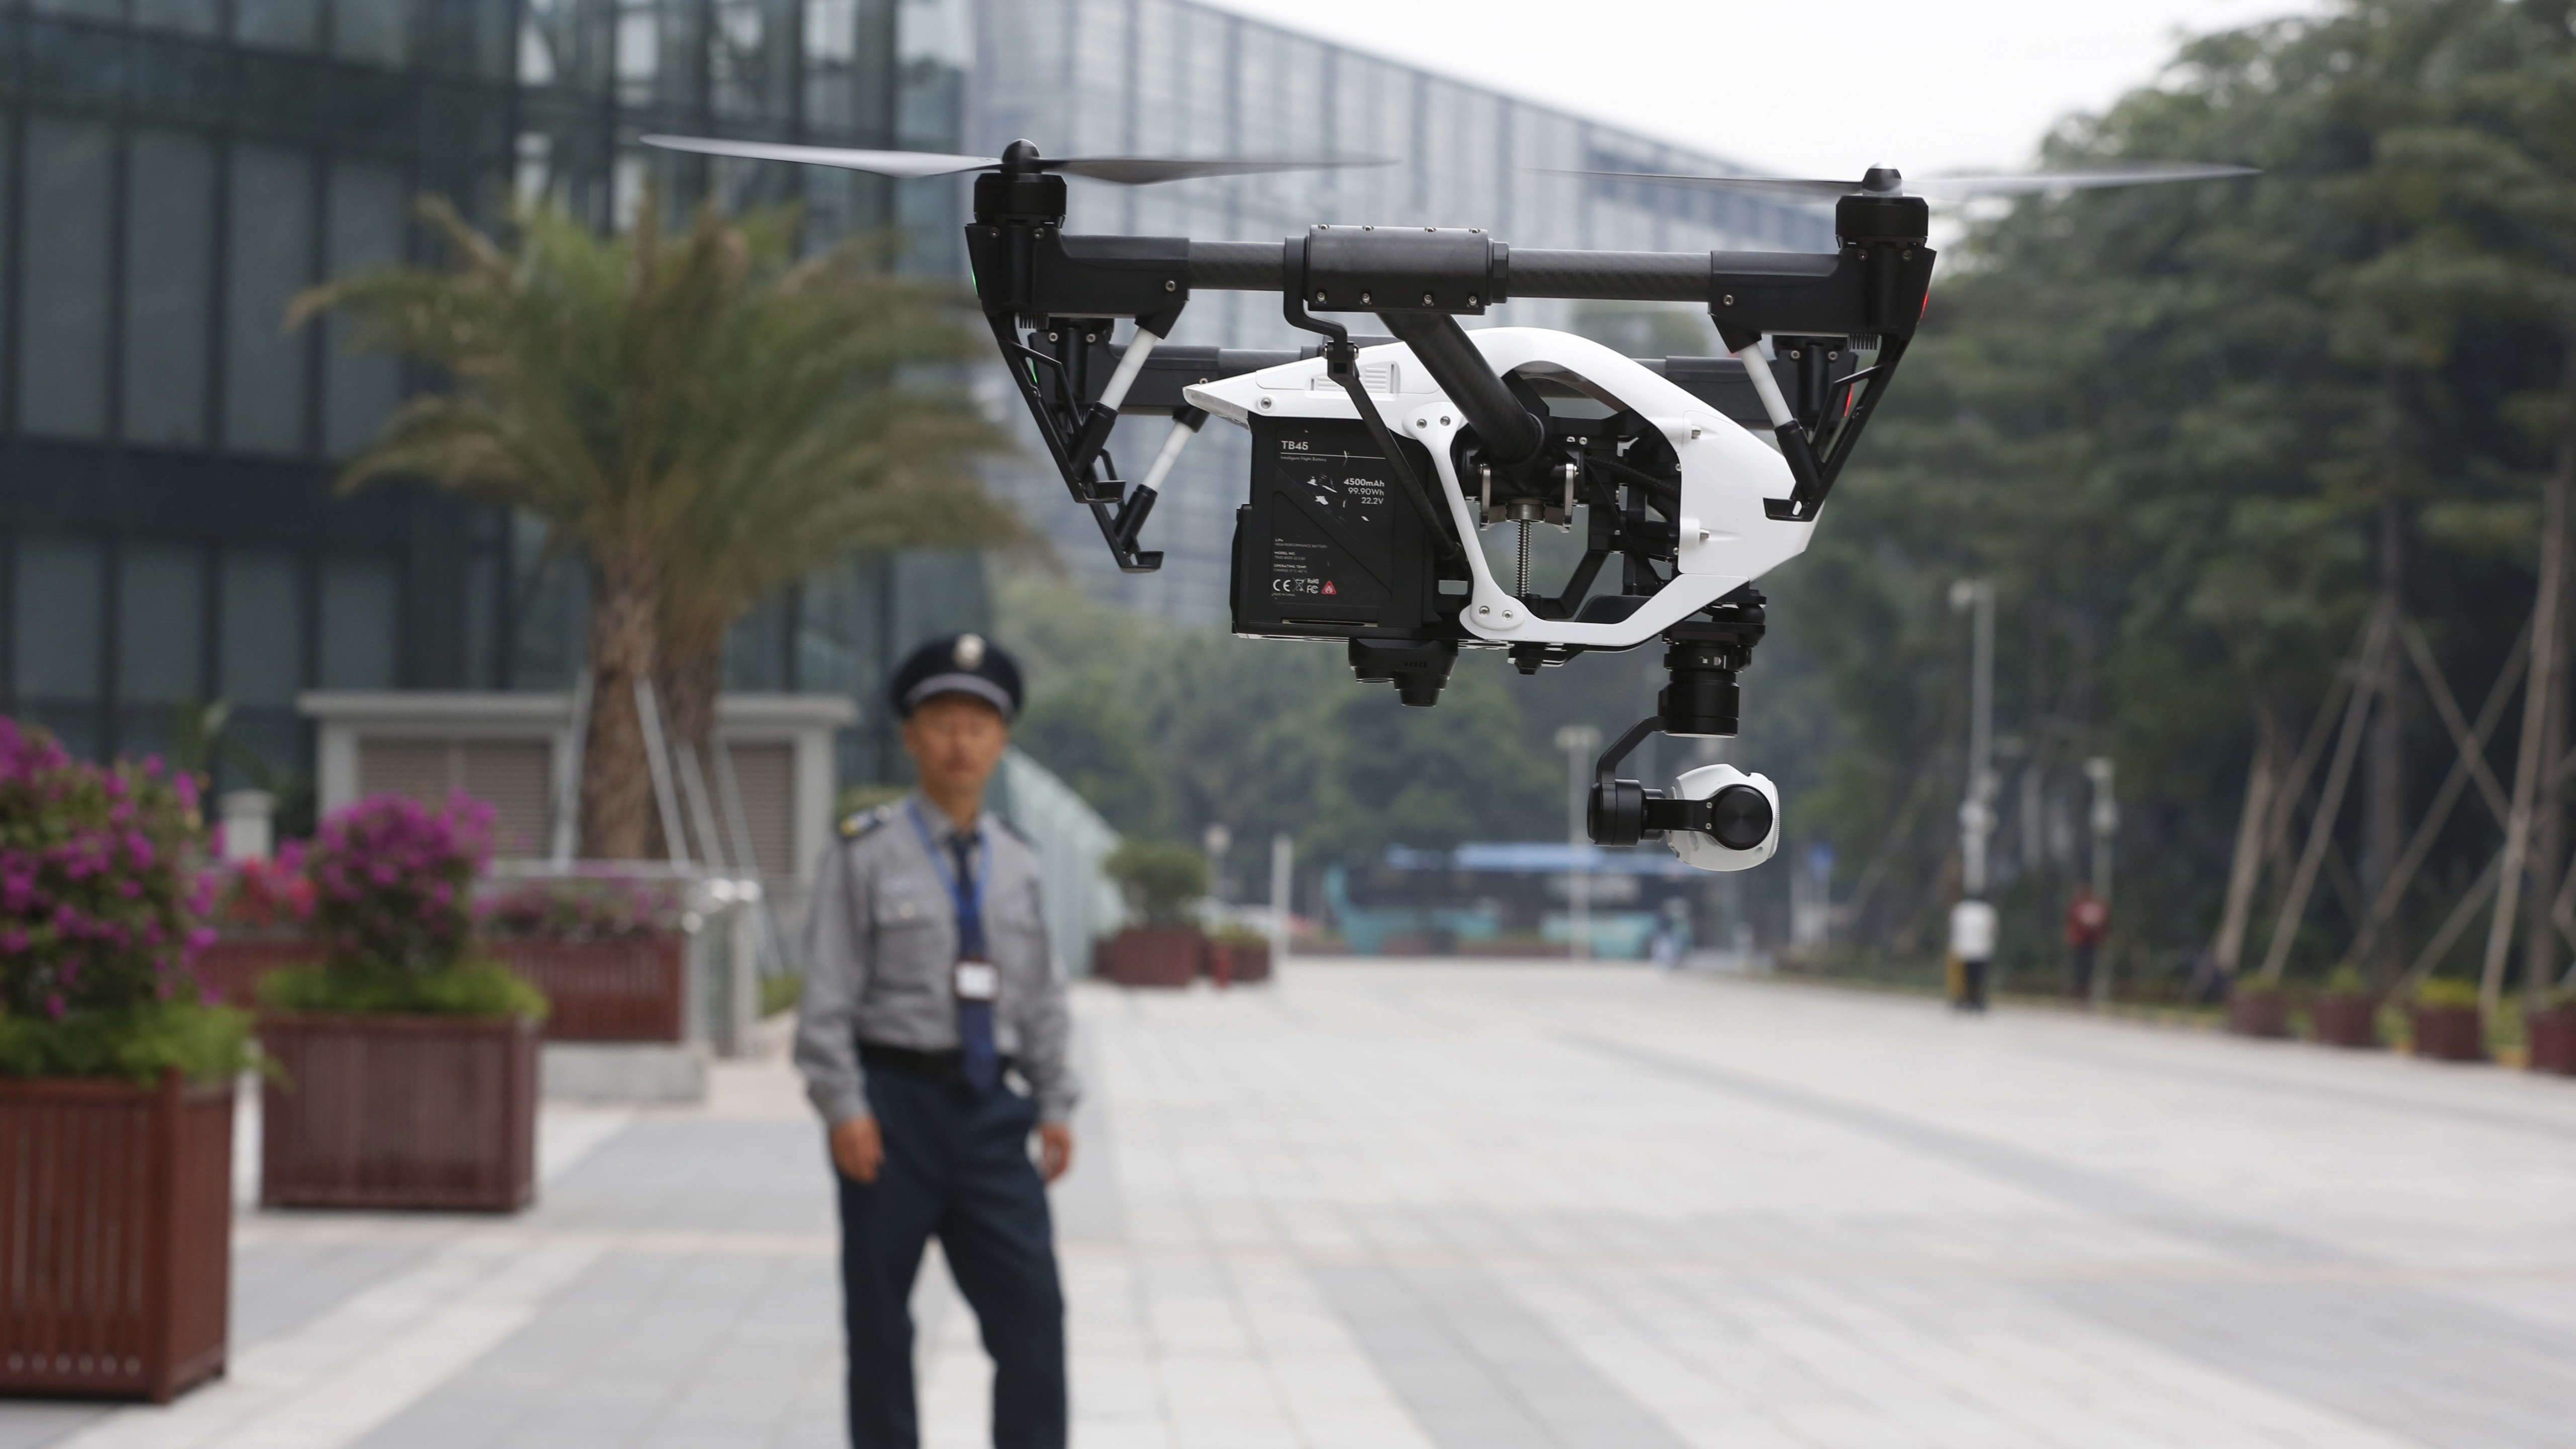 quadair drone with camera